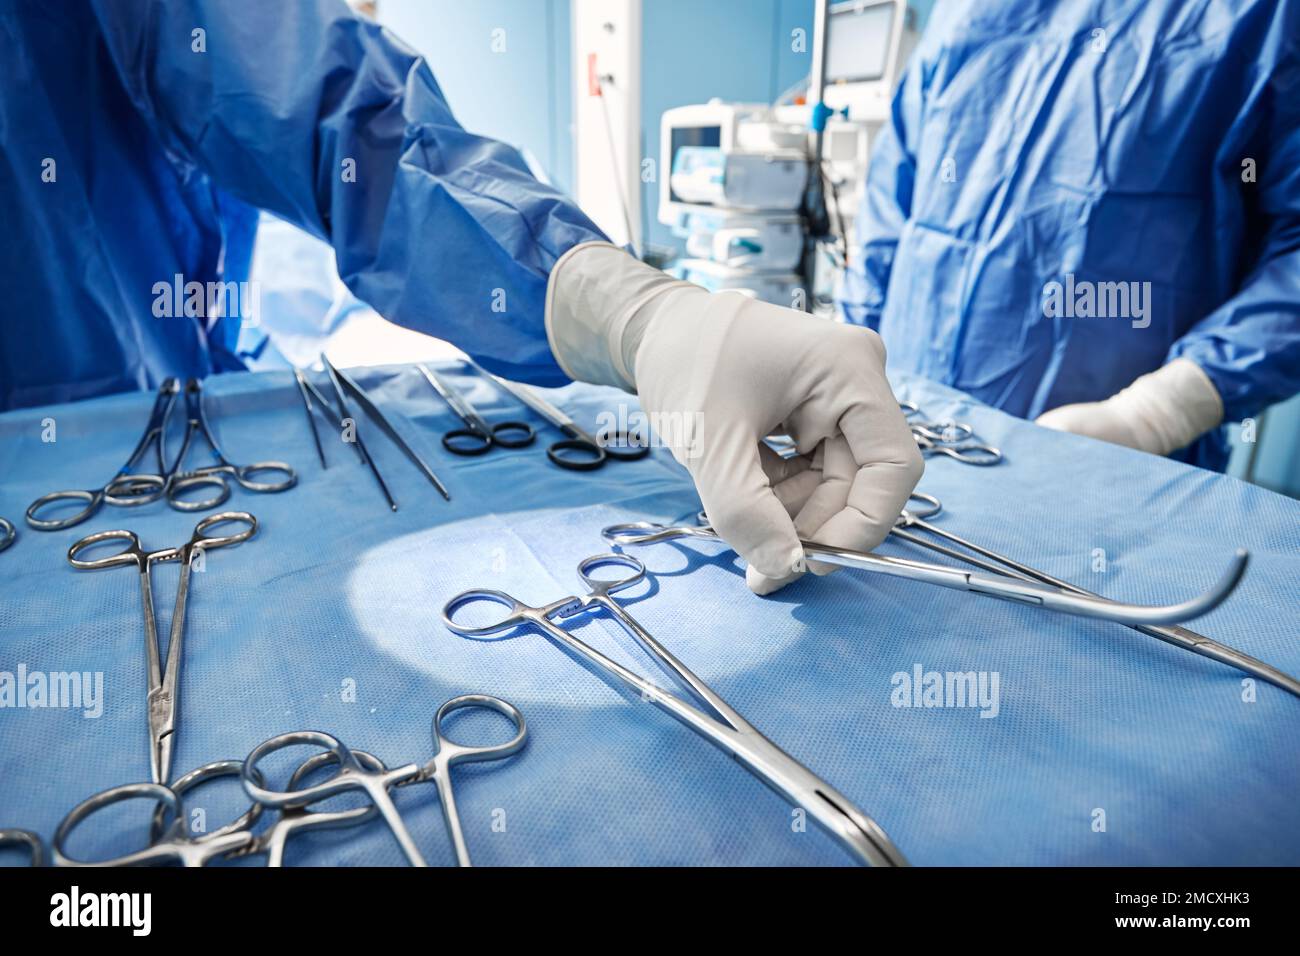 Gros plan d'instruments chirurgicaux stérilisés et prêts à l'emploi sur un plateau médical pendant l'opération chirurgicale dans la salle d'opération de l'hôpital Banque D'Images